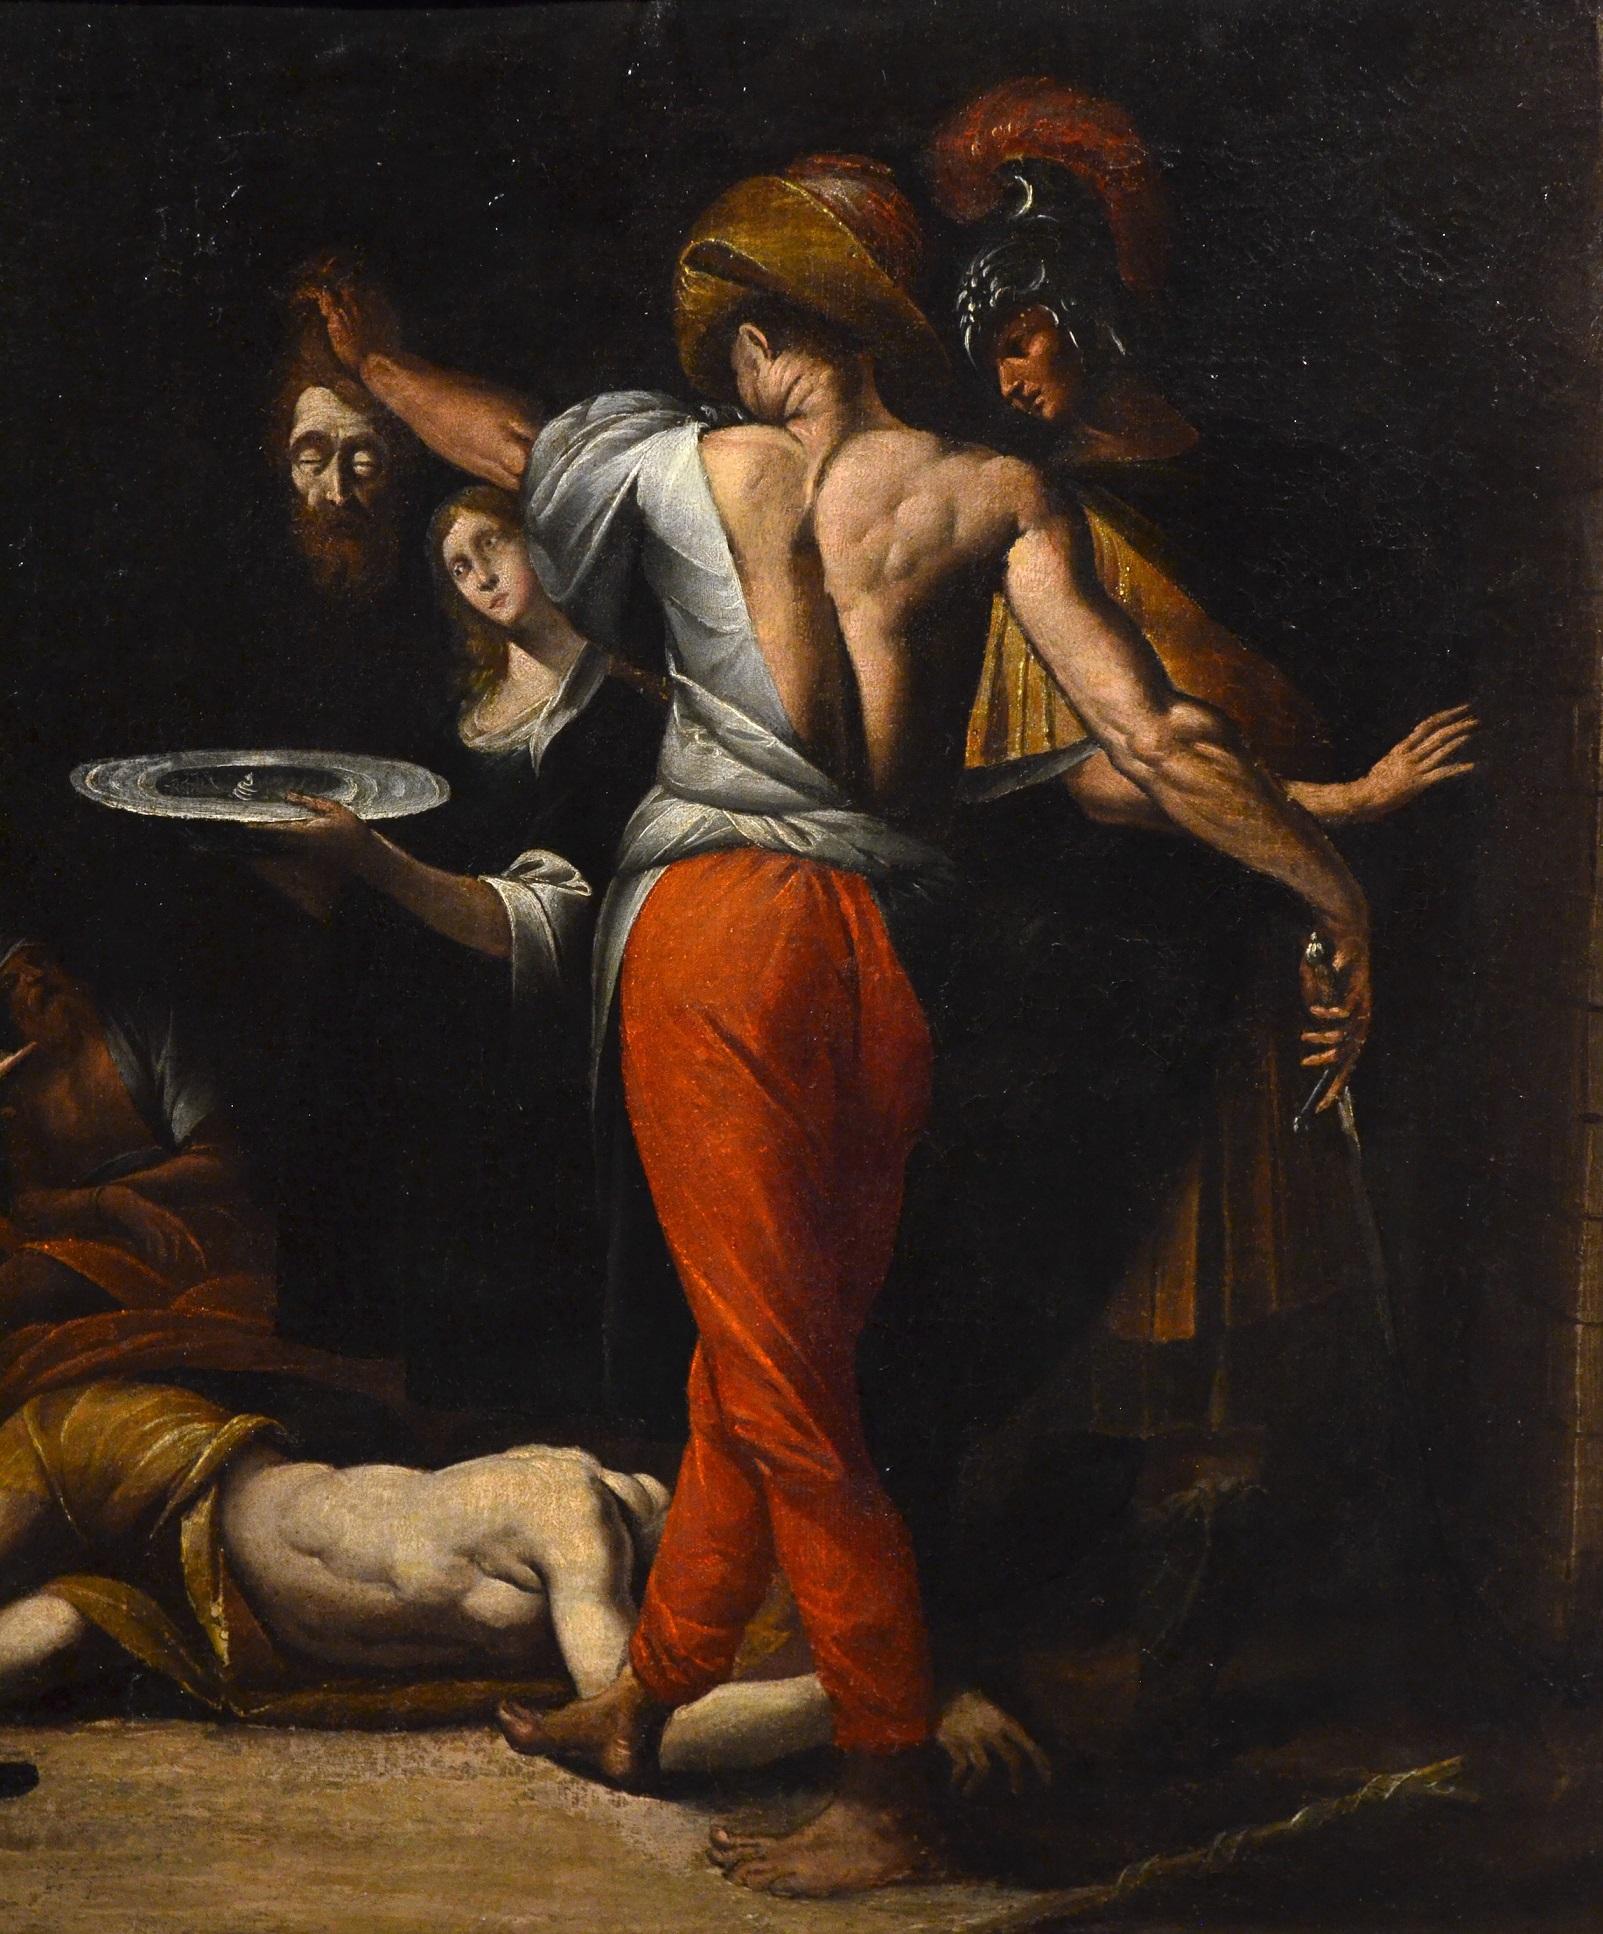 Saint John Baptist Morazzone Paint Oil on canvas Old master 17th Century Italy 10